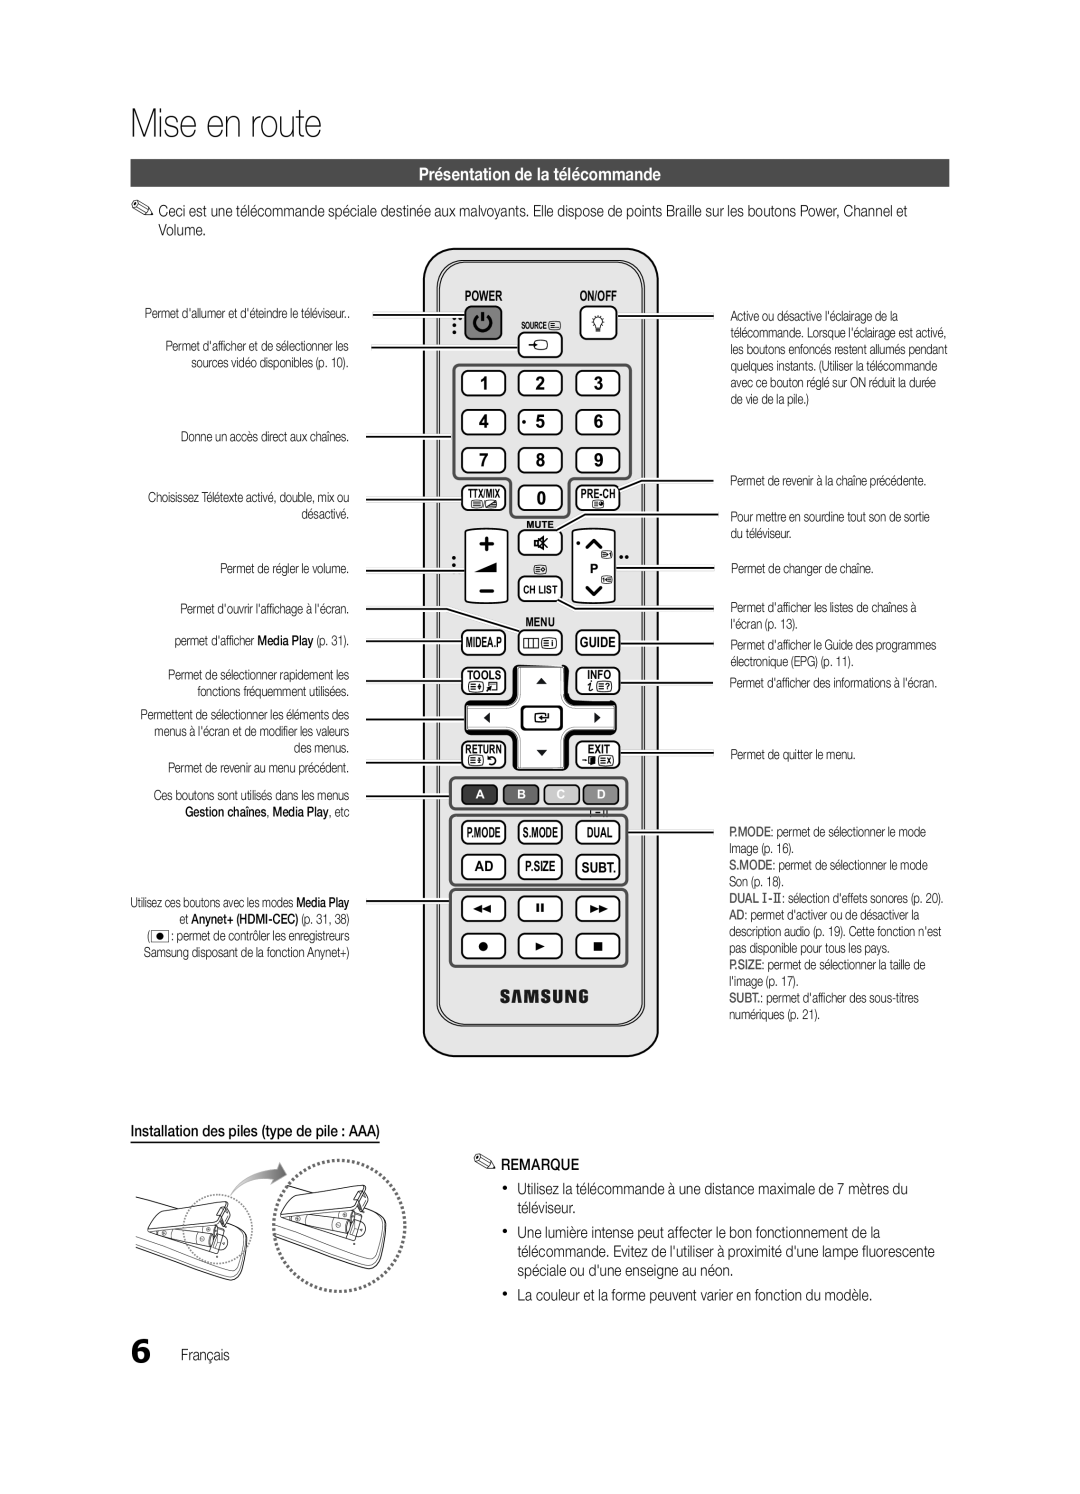 Samsung UE37C5700QSXZG Présentation de la télécommande, Mise en route, Power, On/Off, P.Mode S.Mode Dual Ad P.Size Subt 